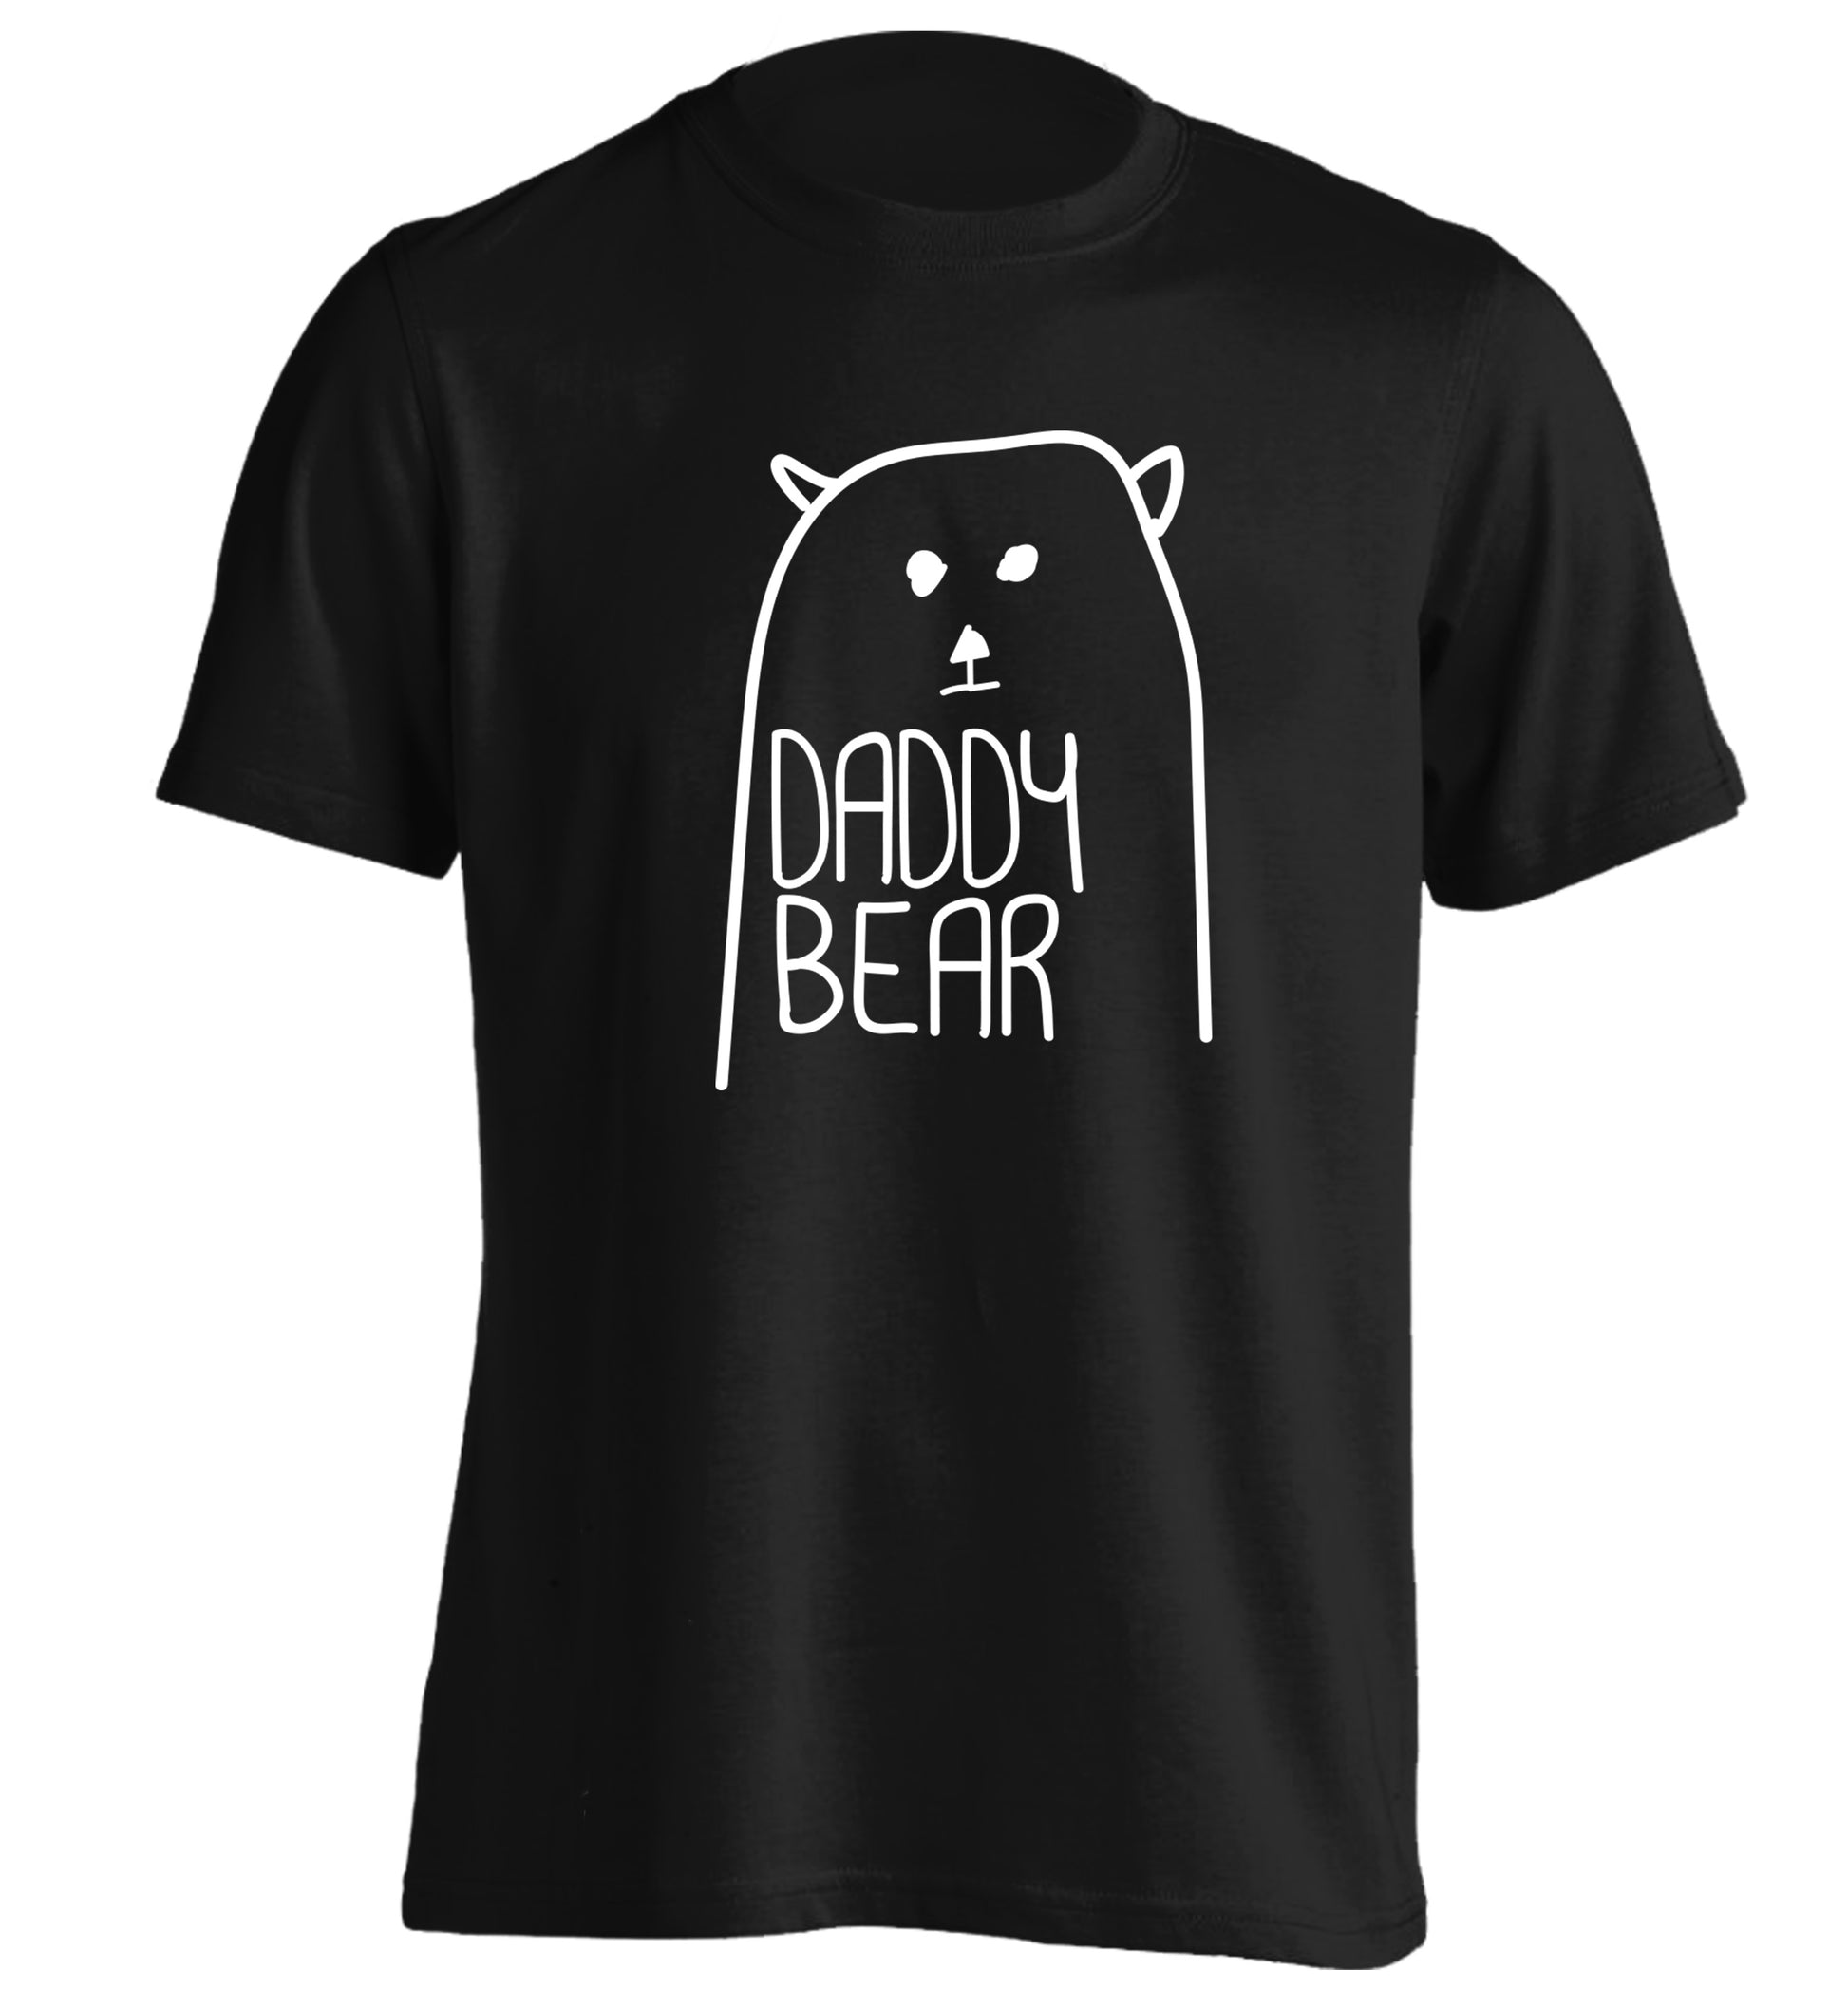 Daddy bear adults unisex black Tshirt 2XL